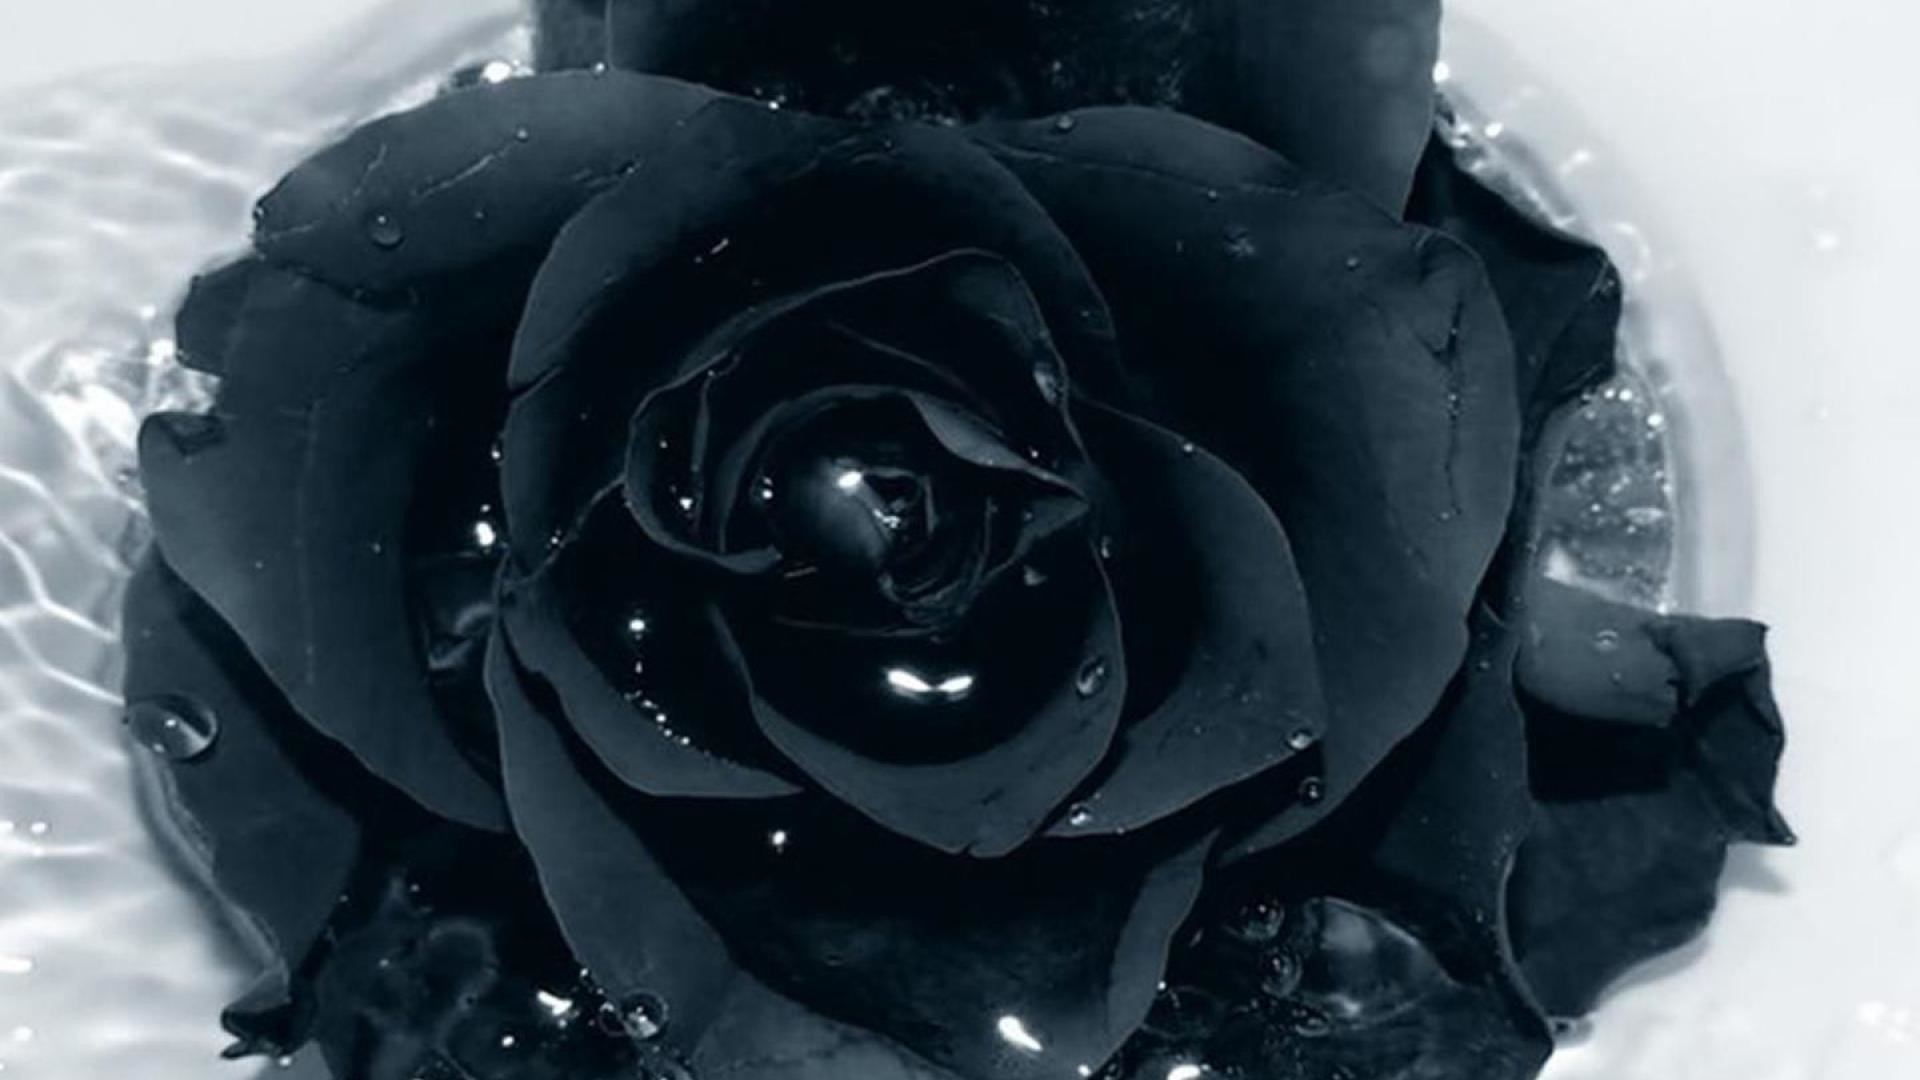 Обои Черные Розы